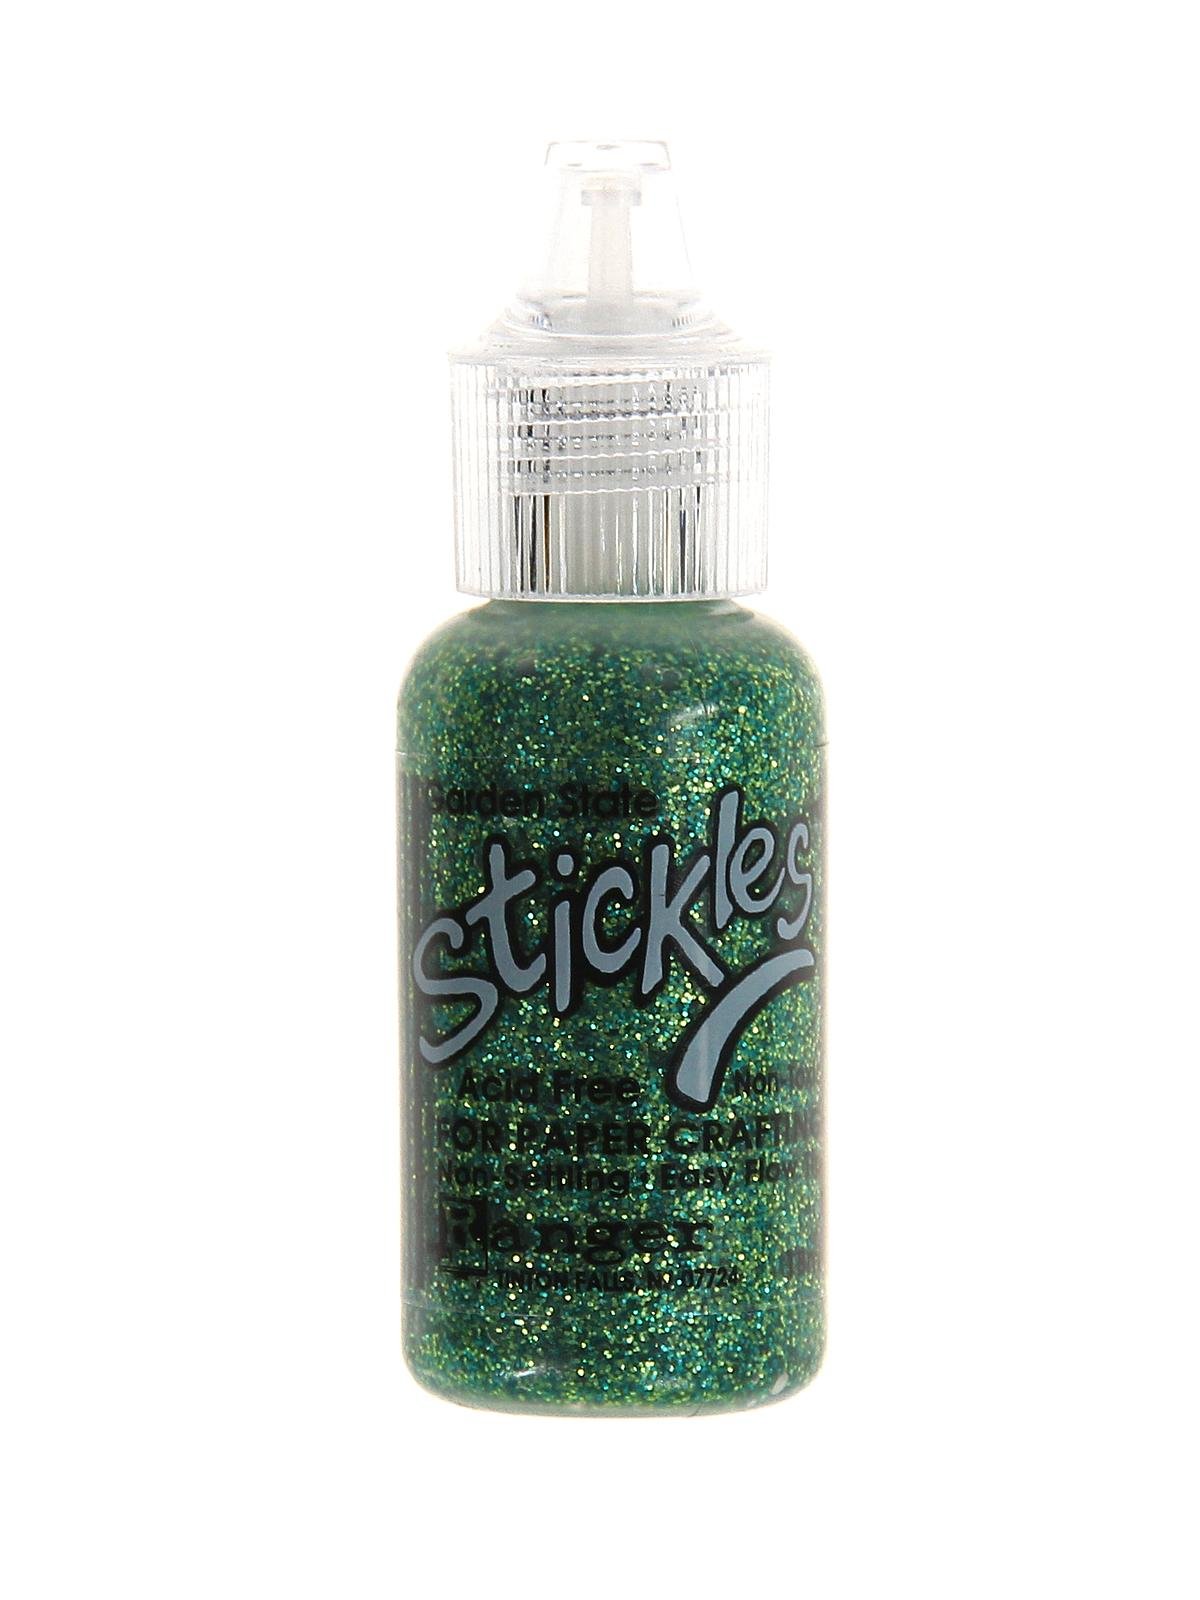 Stickles Glitter Glue, Ranger